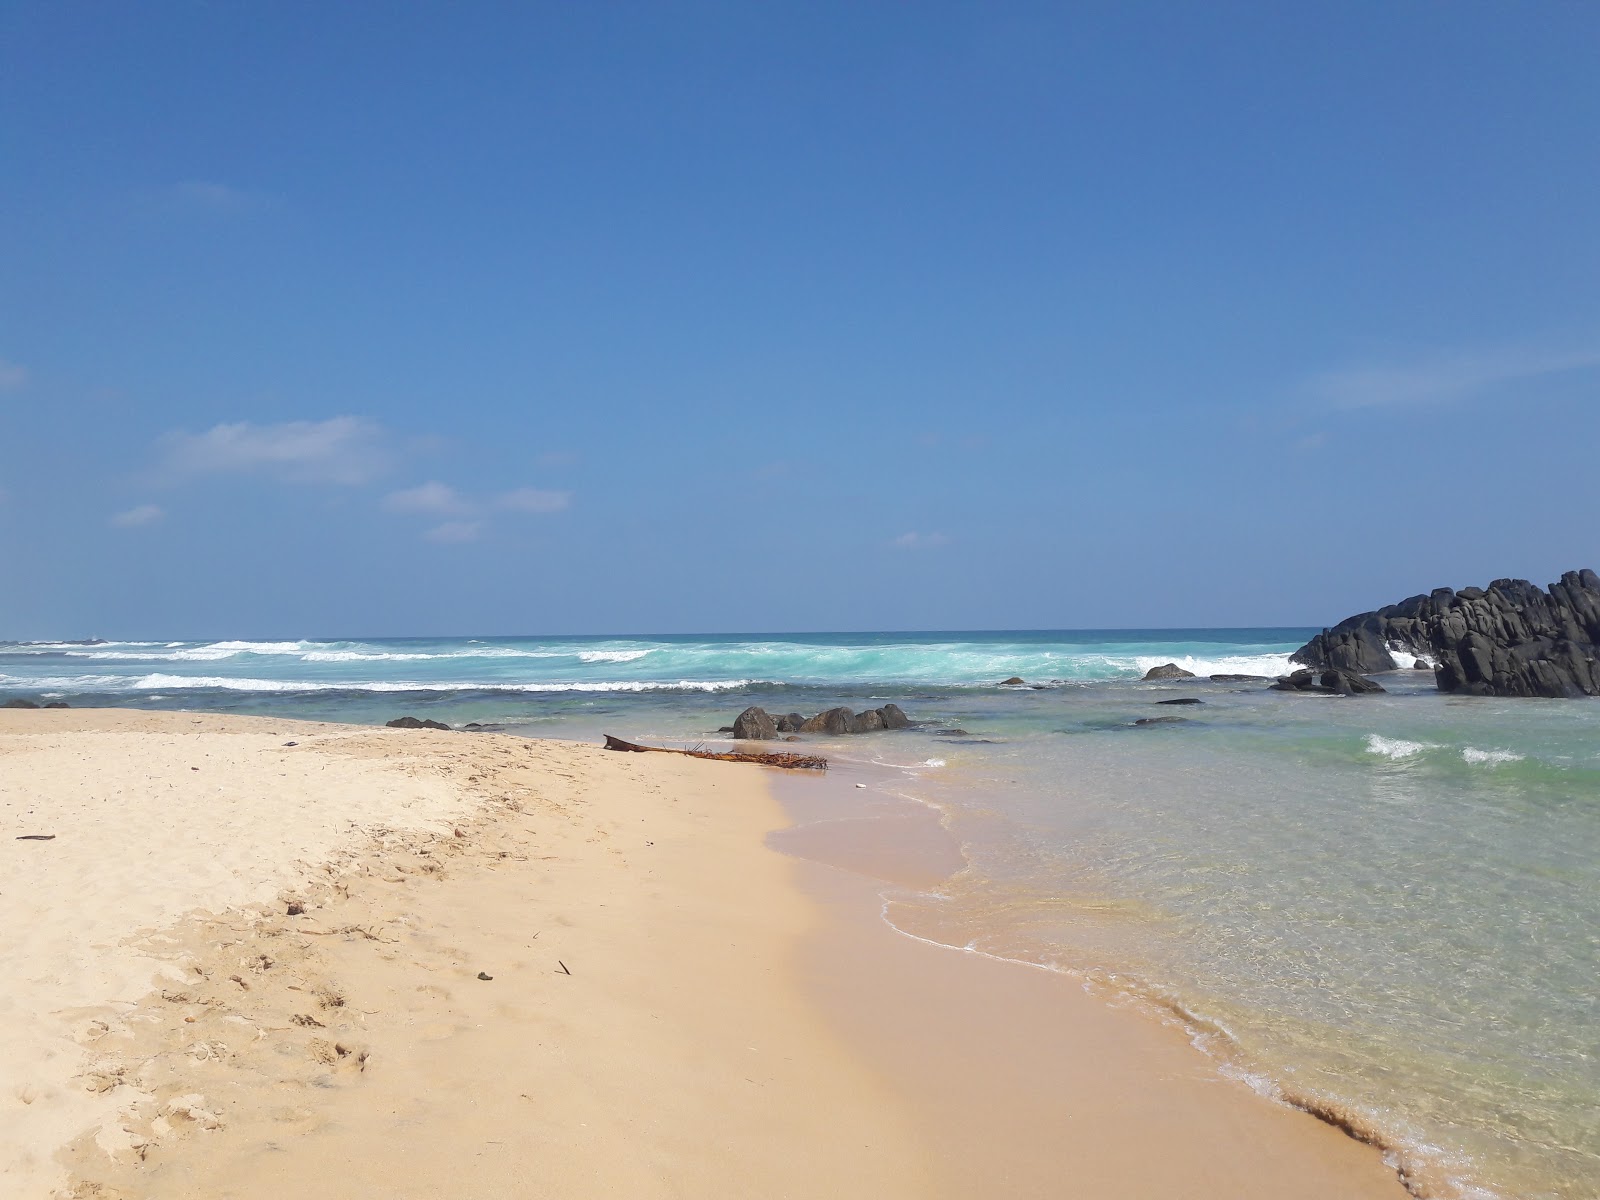 Zdjęcie Dalawella Beach - popularne miejsce wśród znawców relaksu